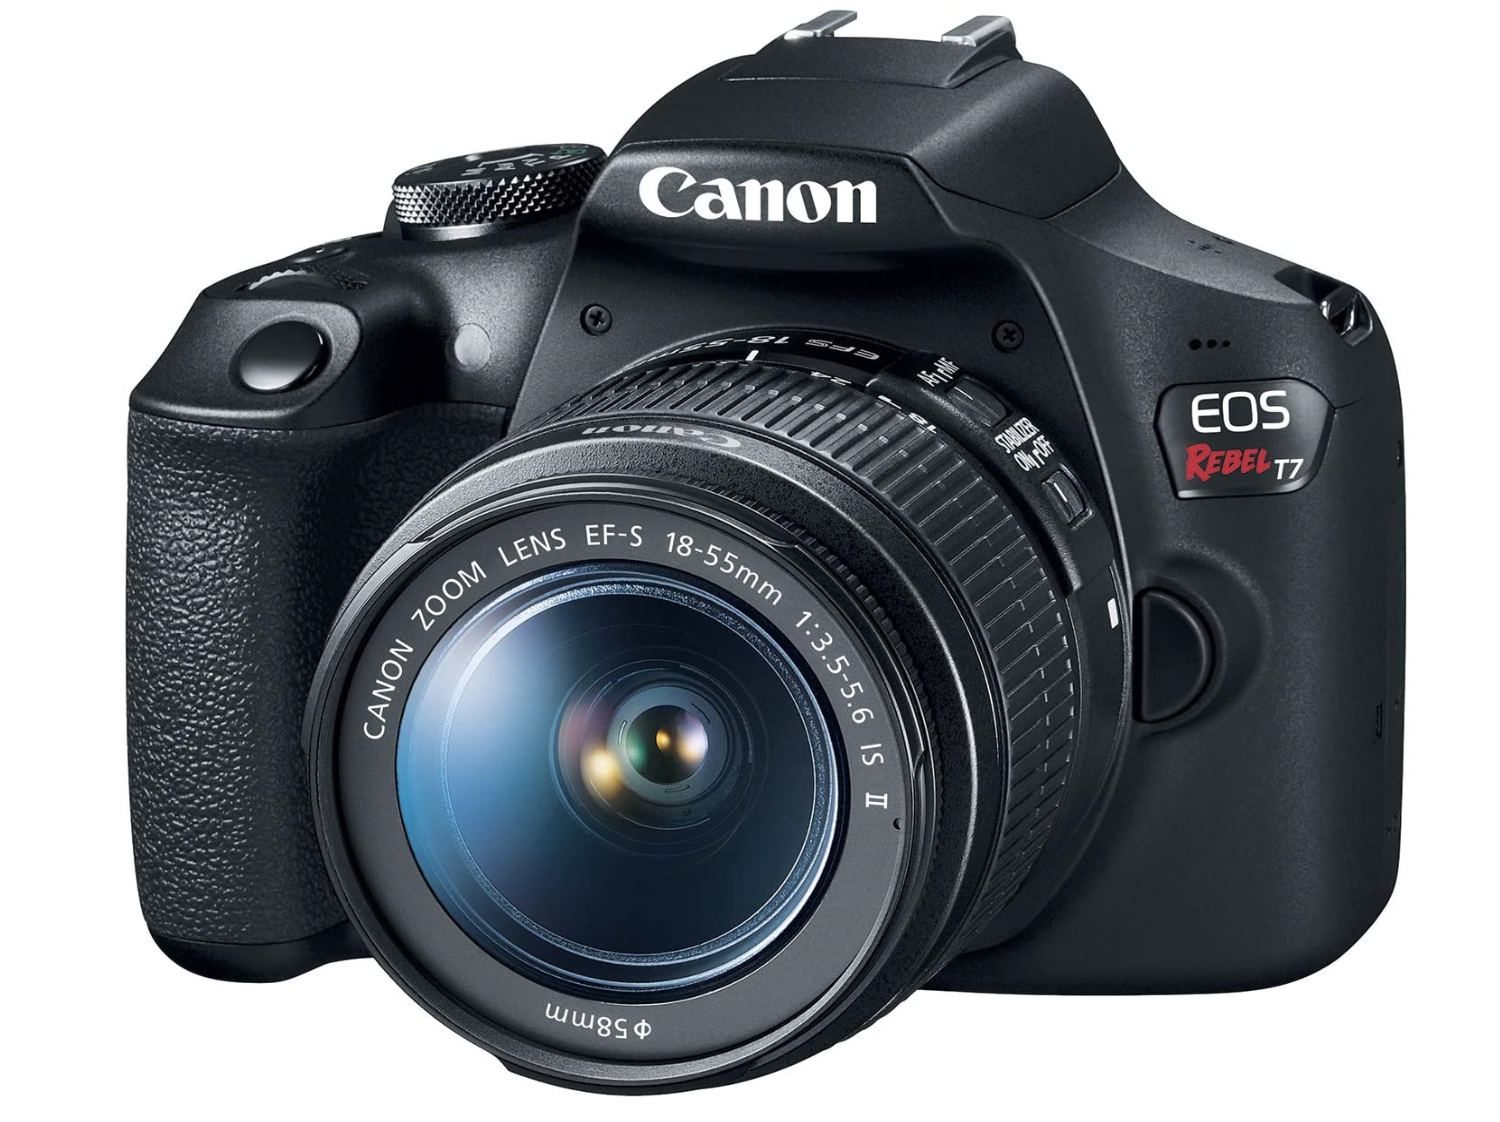 Canon DSLR Camera